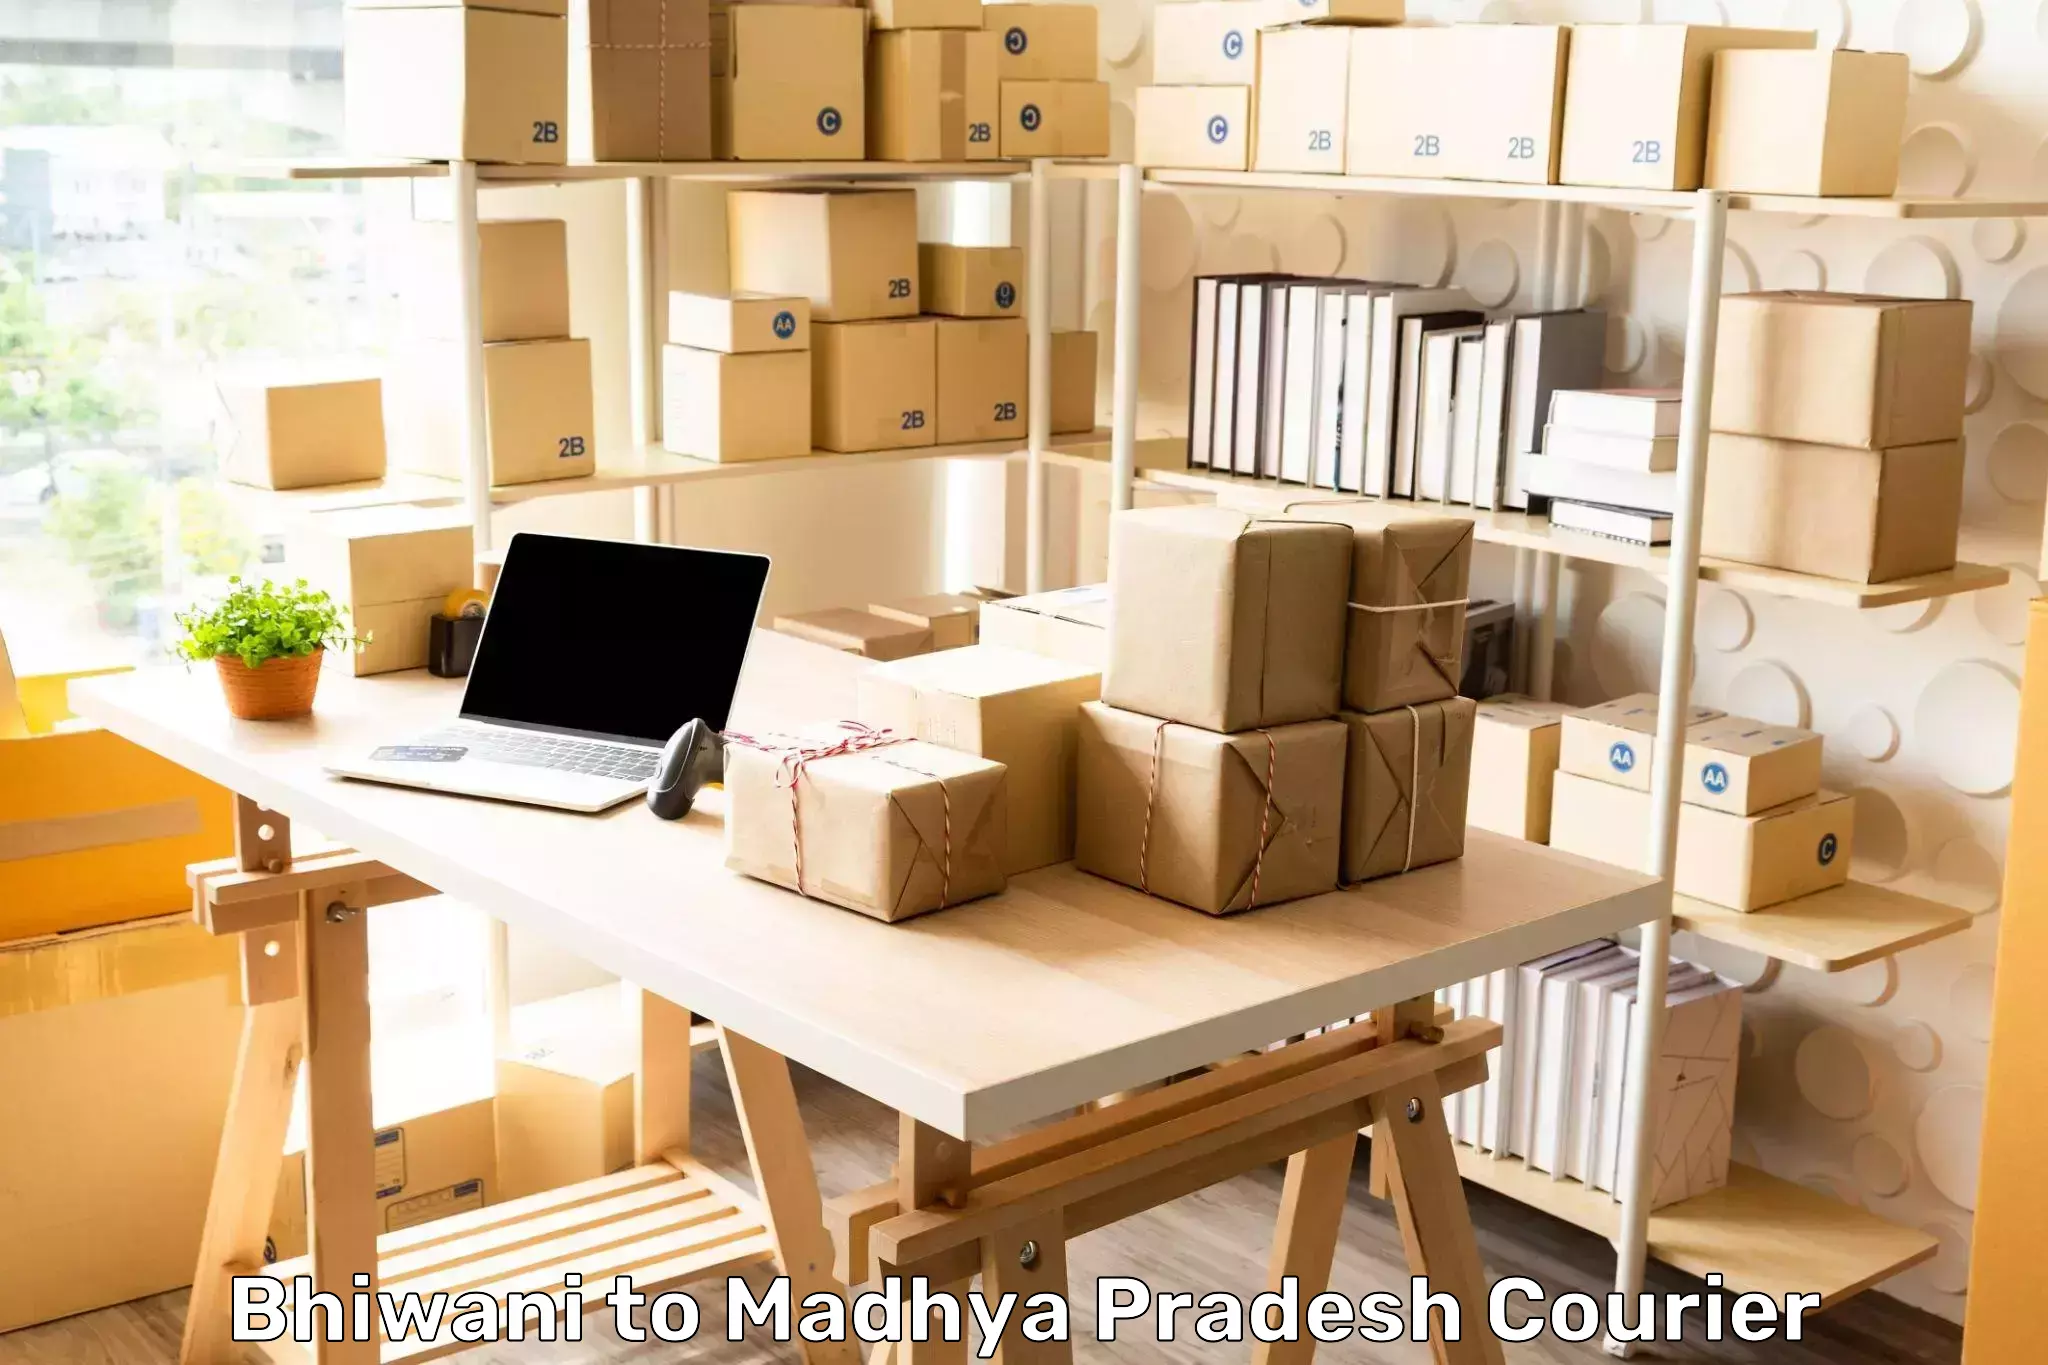 Door-to-door shipment Bhiwani to Madhya Pradesh